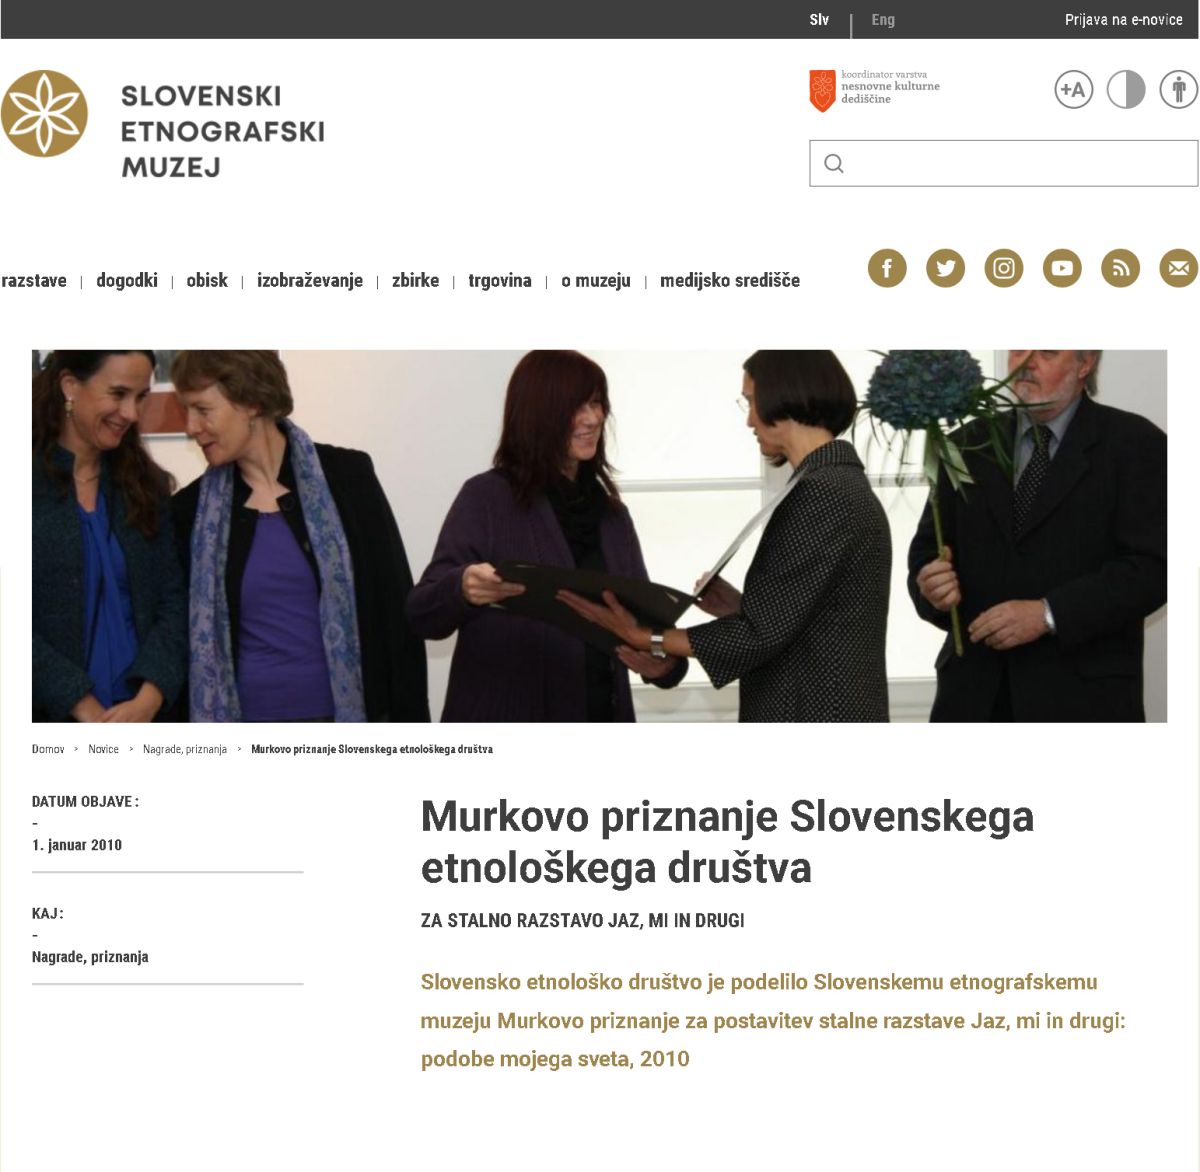 Murkovo priznanje Slovenskega etnološkega društva za stalno razstavo Jaz, mi in drugi v Slovenskem etnografskem muzeju, januar 2010.